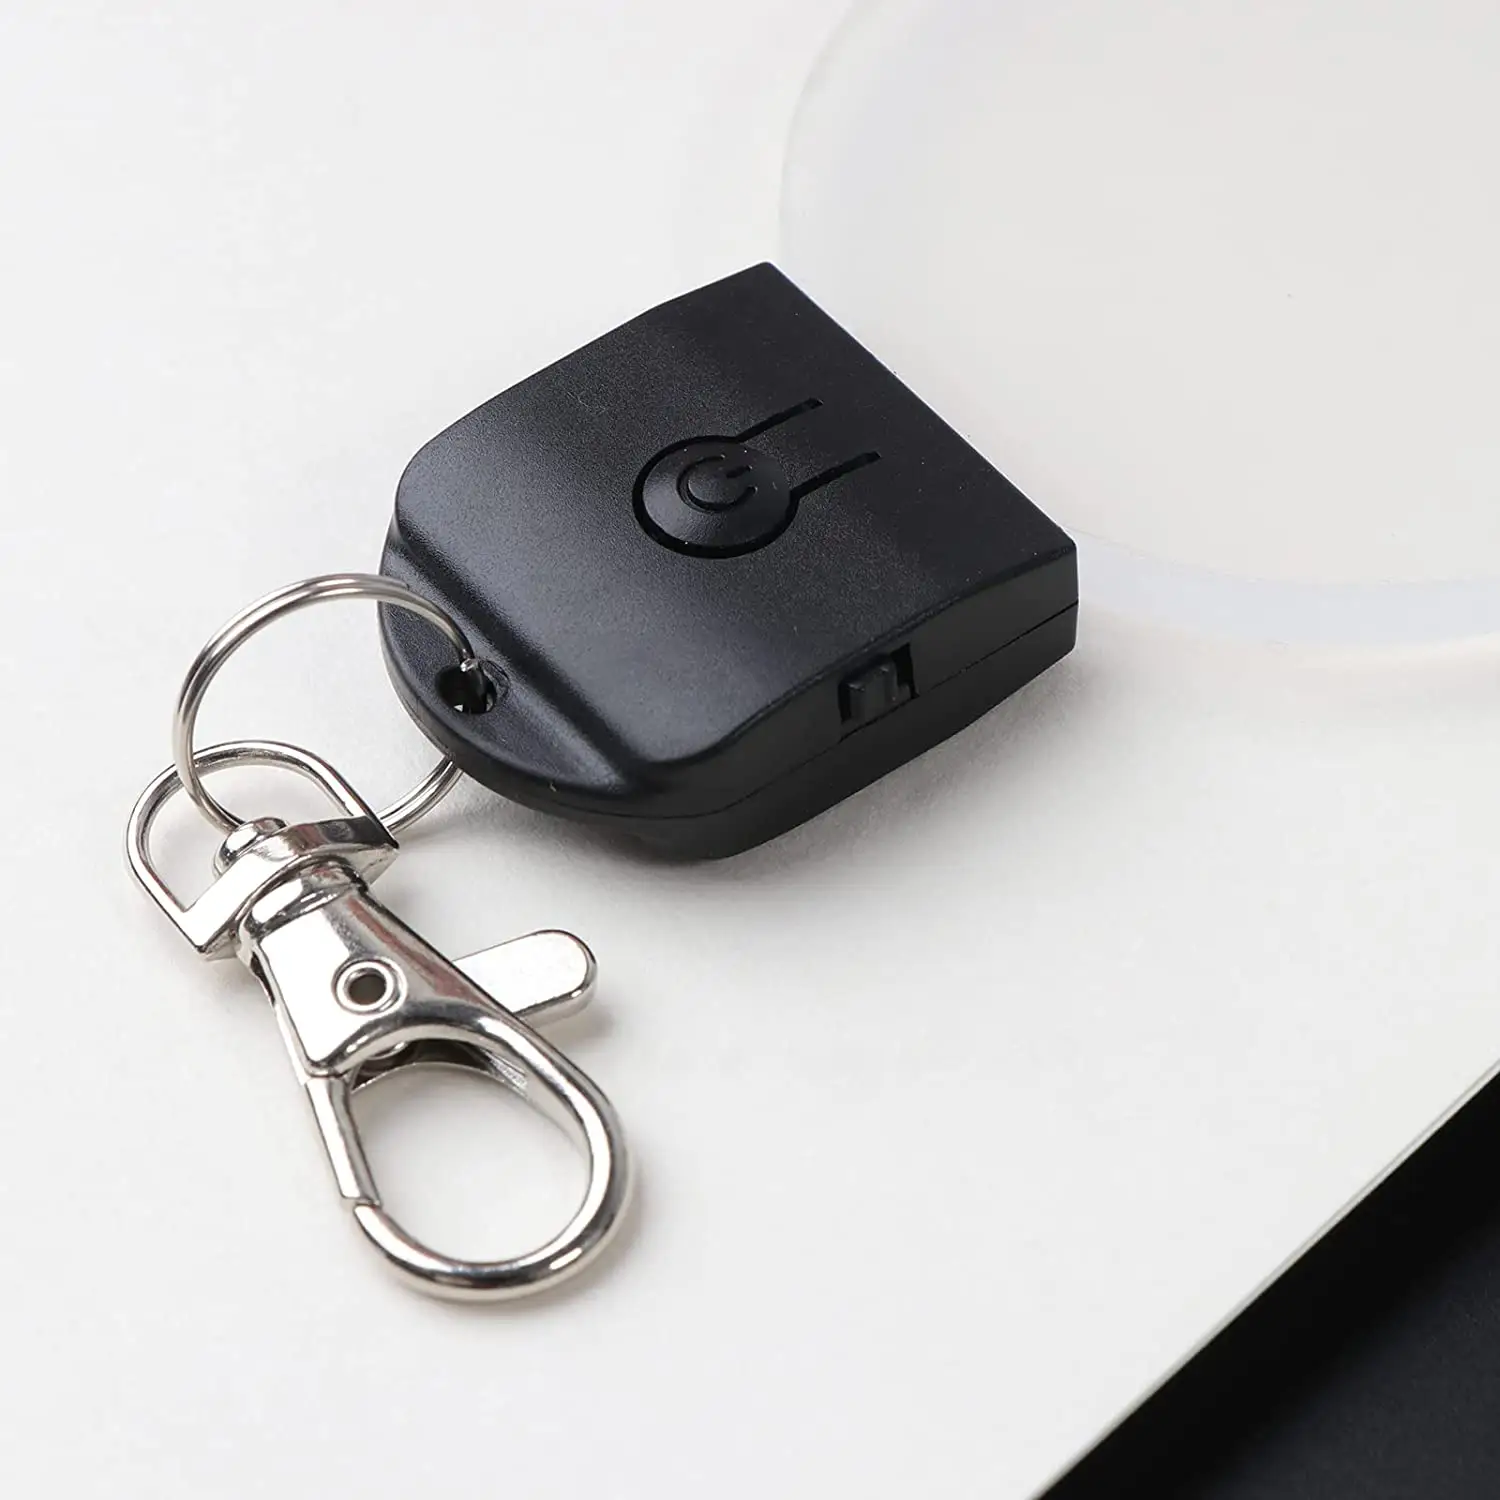 Fashion Acrylic Key Ring Car Keyring Practical LED Key Fob Night Light Keychain Blank Key Chain Gift for Friend